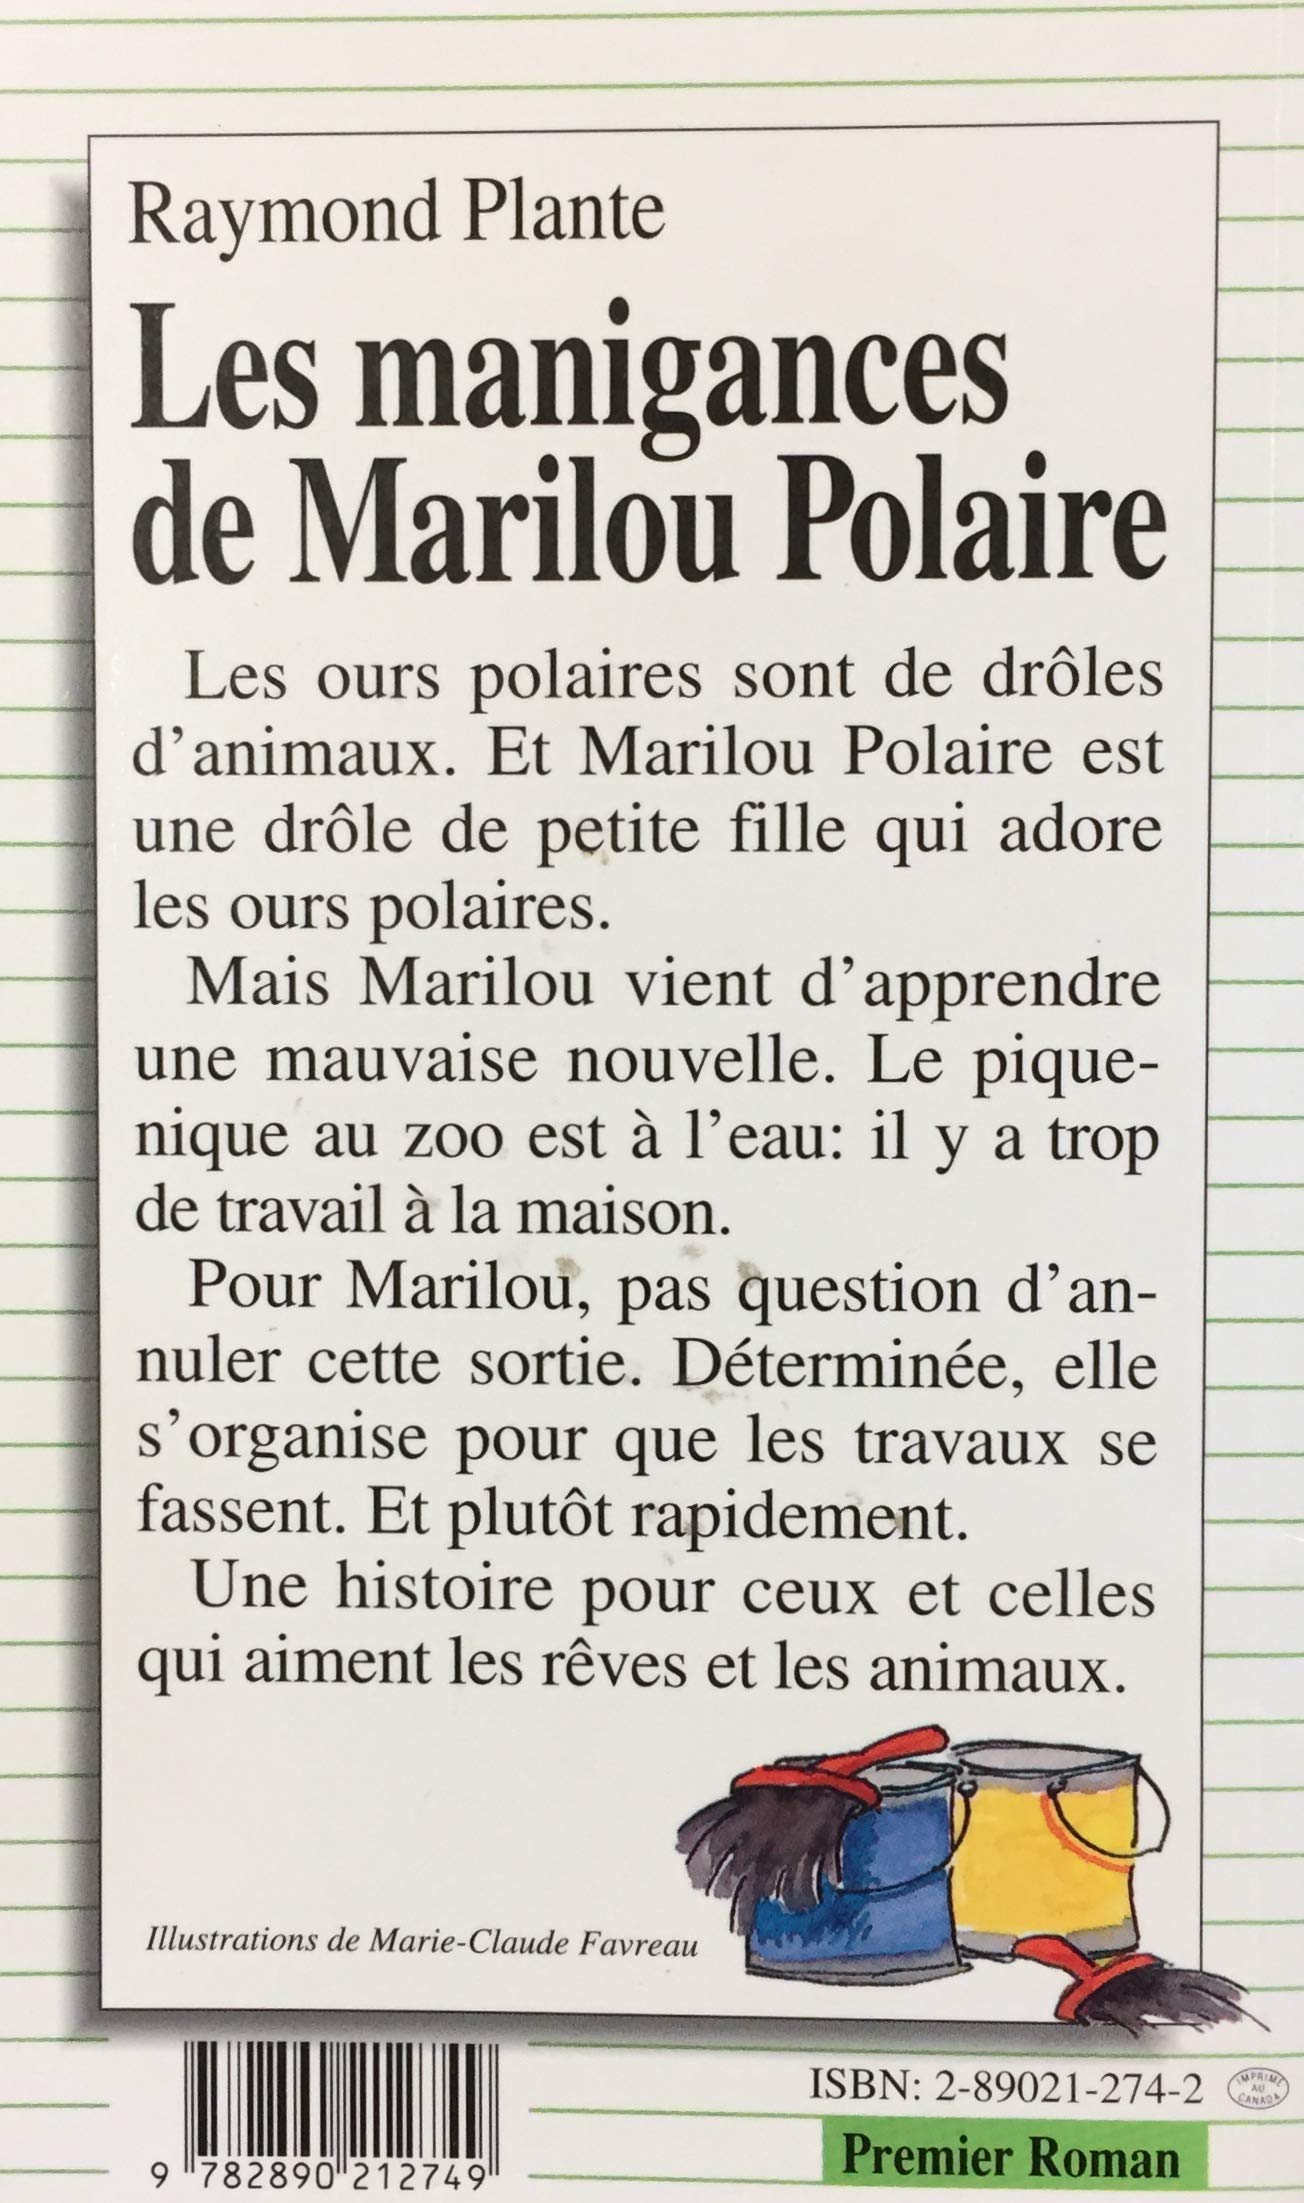 Premier roman # 53 : Les manigances de Marilou Polaire (Raymond Plante)